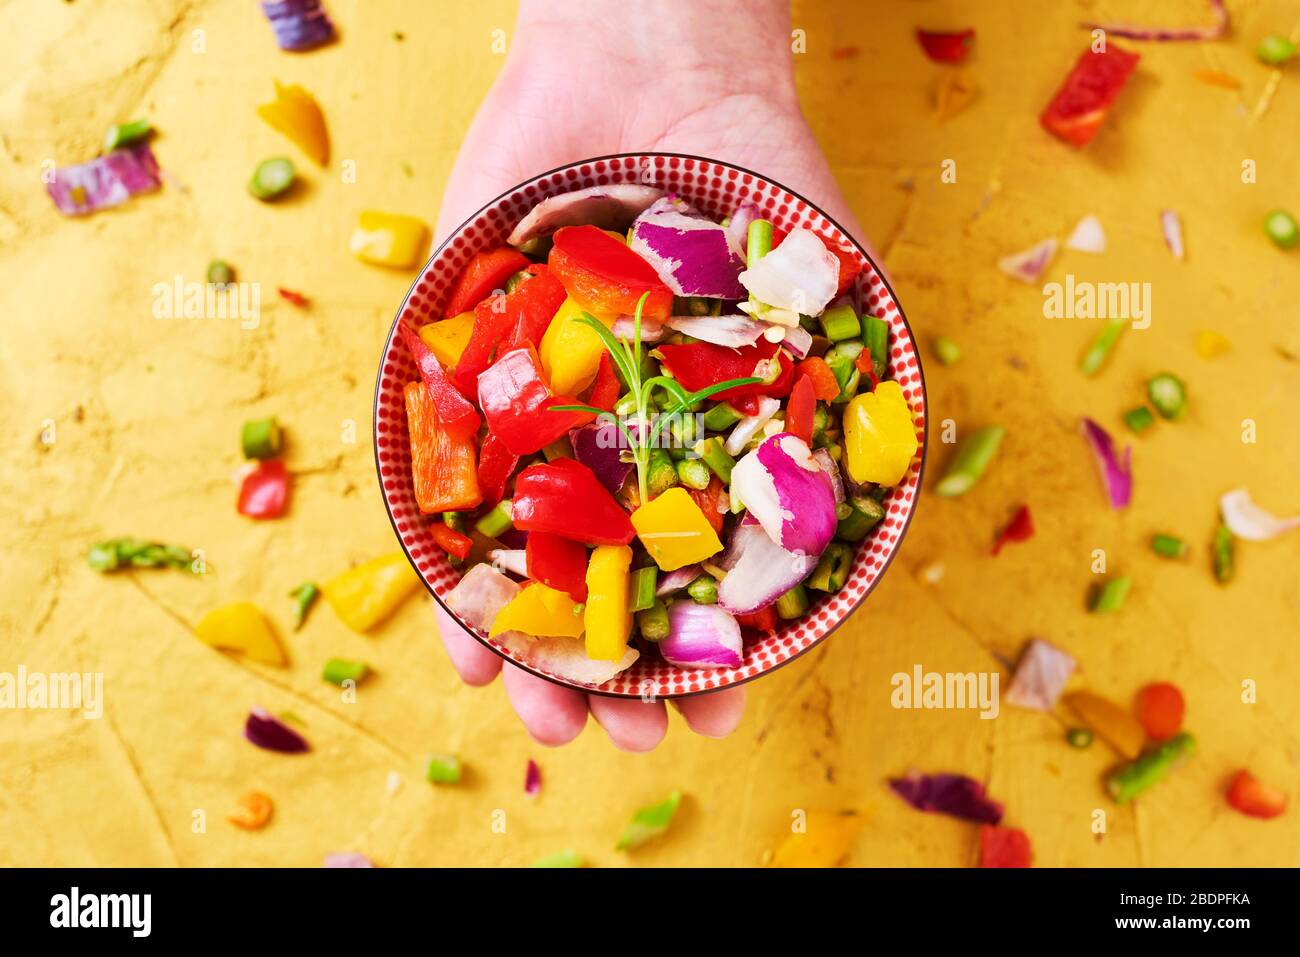 vue en grand angle d'un bol avec un mélange de différents légumes crus hachés, tels que l'asperge, l'oignon ou le poivron jaune et rouge, à la main d'une ma Banque D'Images